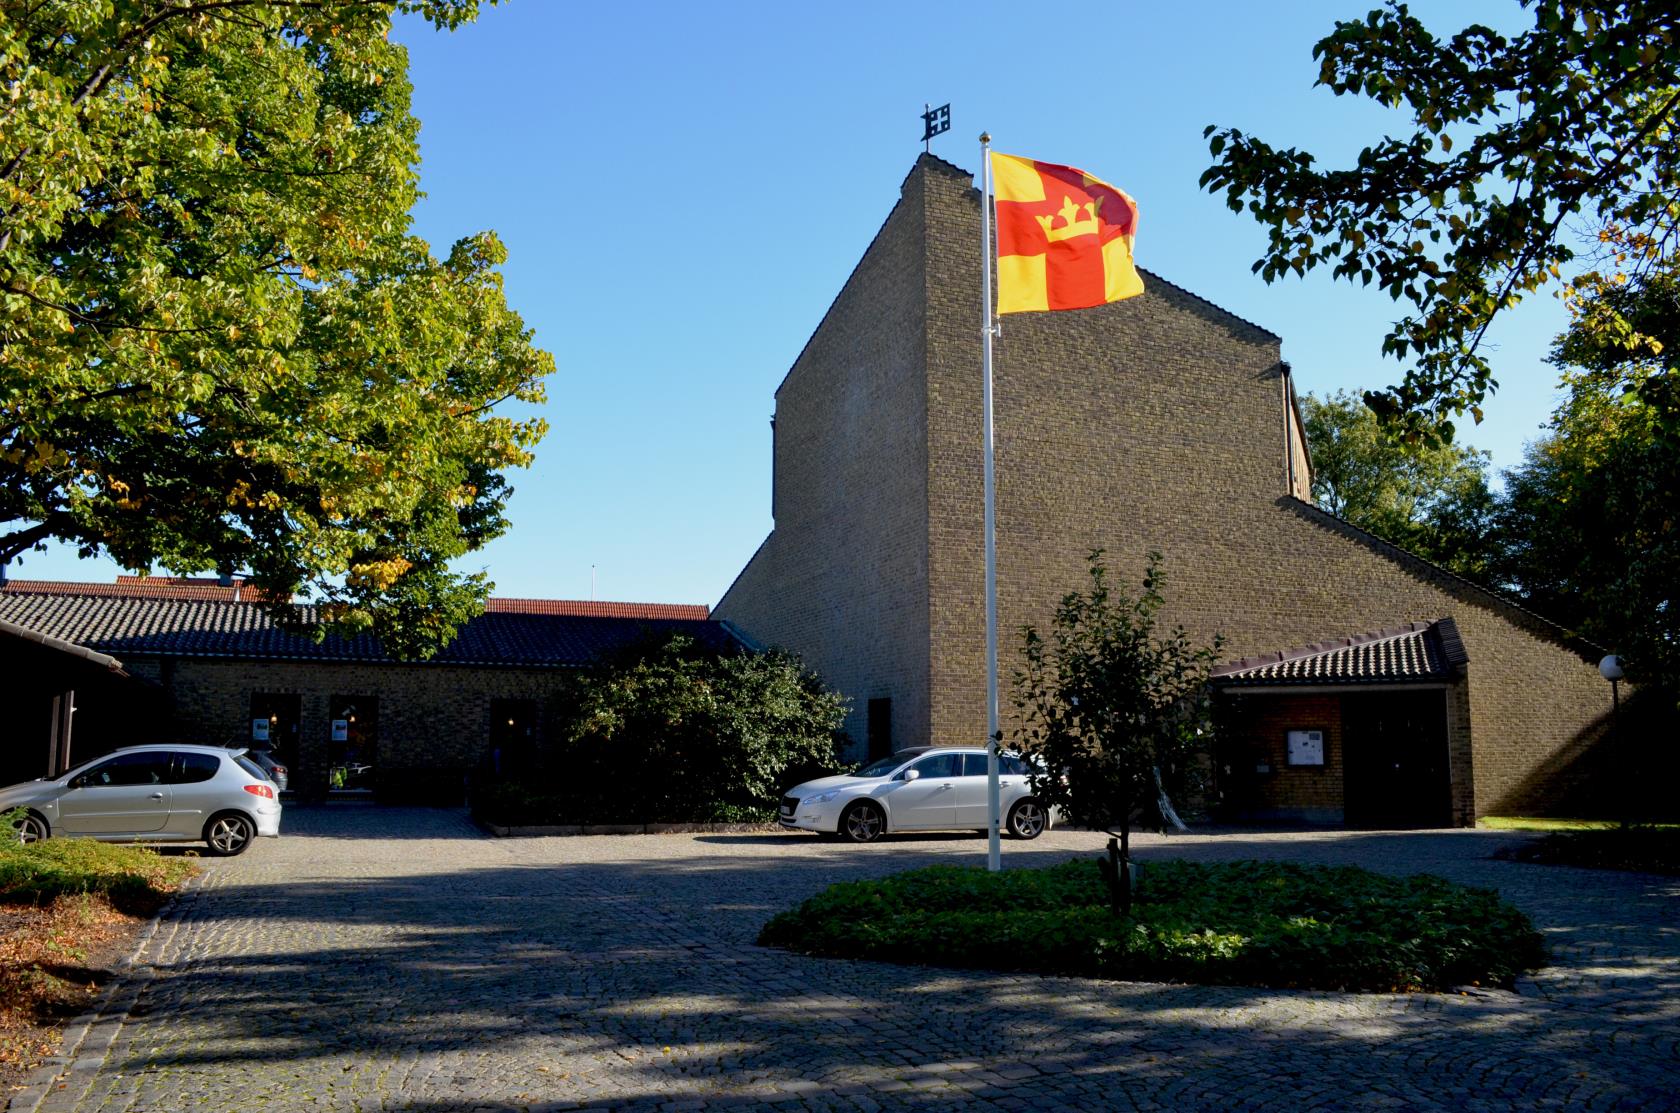 Elinebergskyrkan, en stor byggnad i gult tegel. Själva kyrkobyggnaden är hög och pekar i en spets mot mitten av bilden. Svenska kyrkans flagga i mitten av torget framför kyrkan. Klarblå himmel.